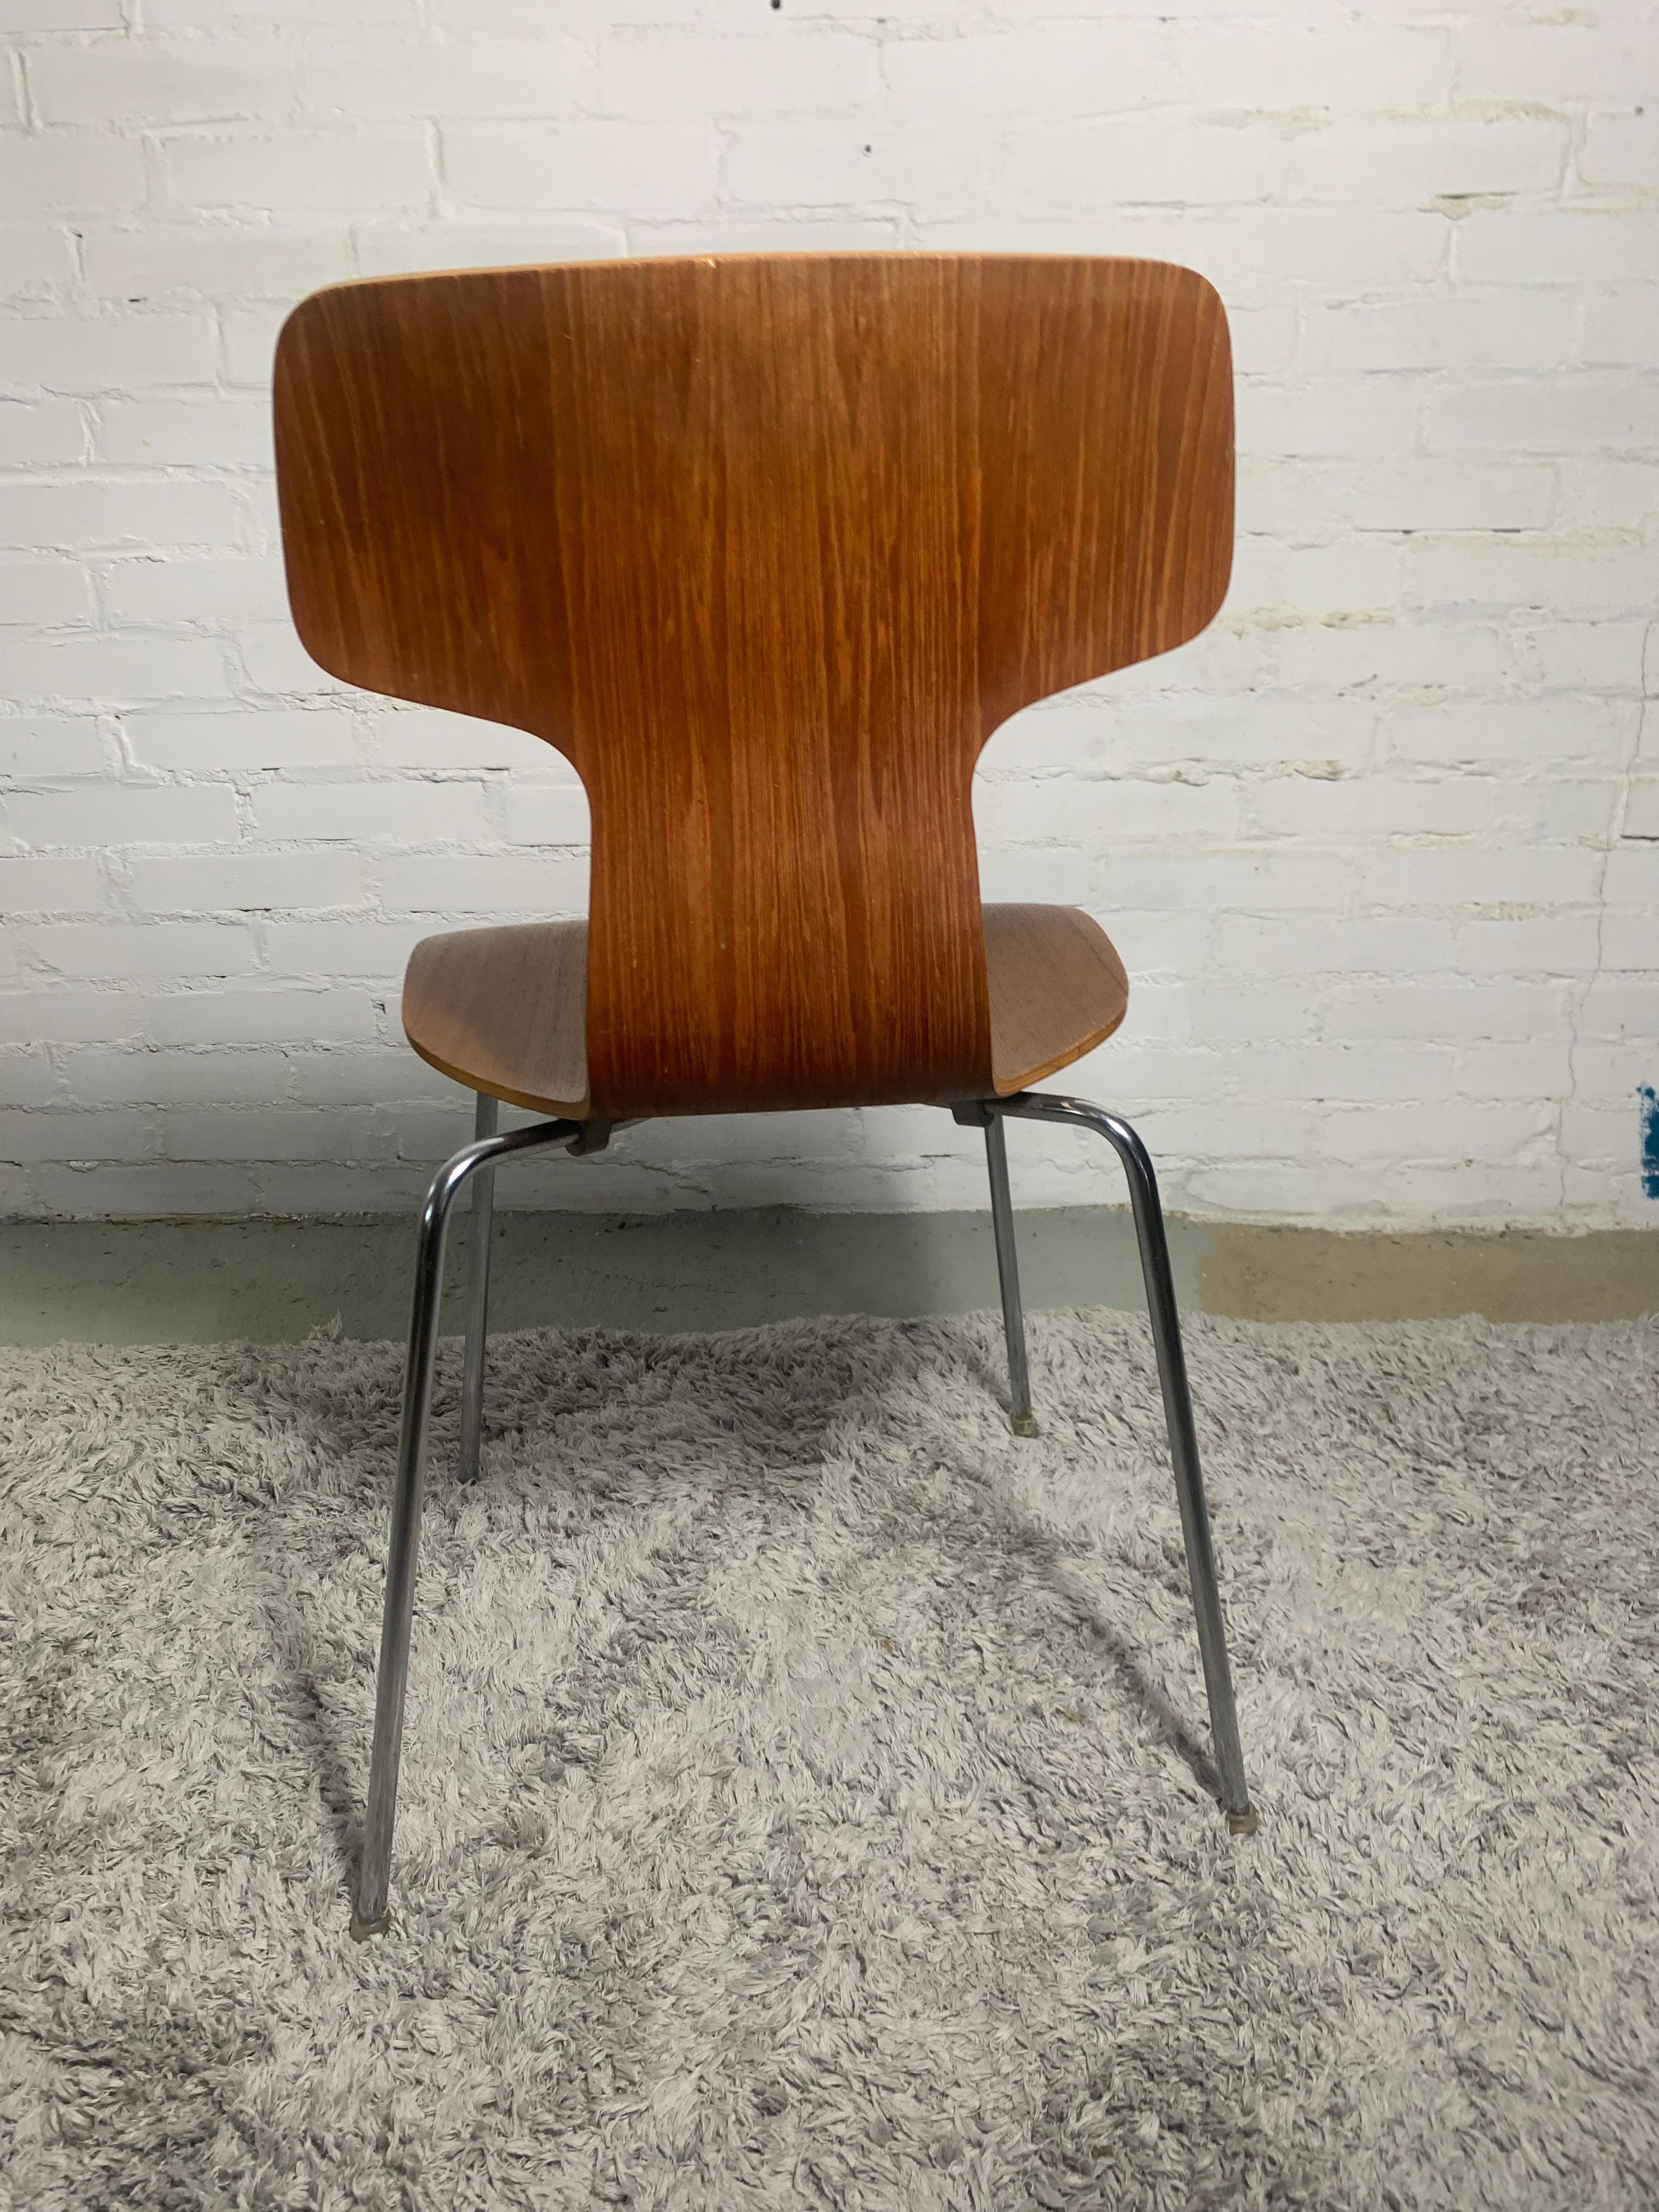 Mid-20th Century Model 3103 Hammer Chair by Arne Jacobsen for Fritz Hansen, 1960s